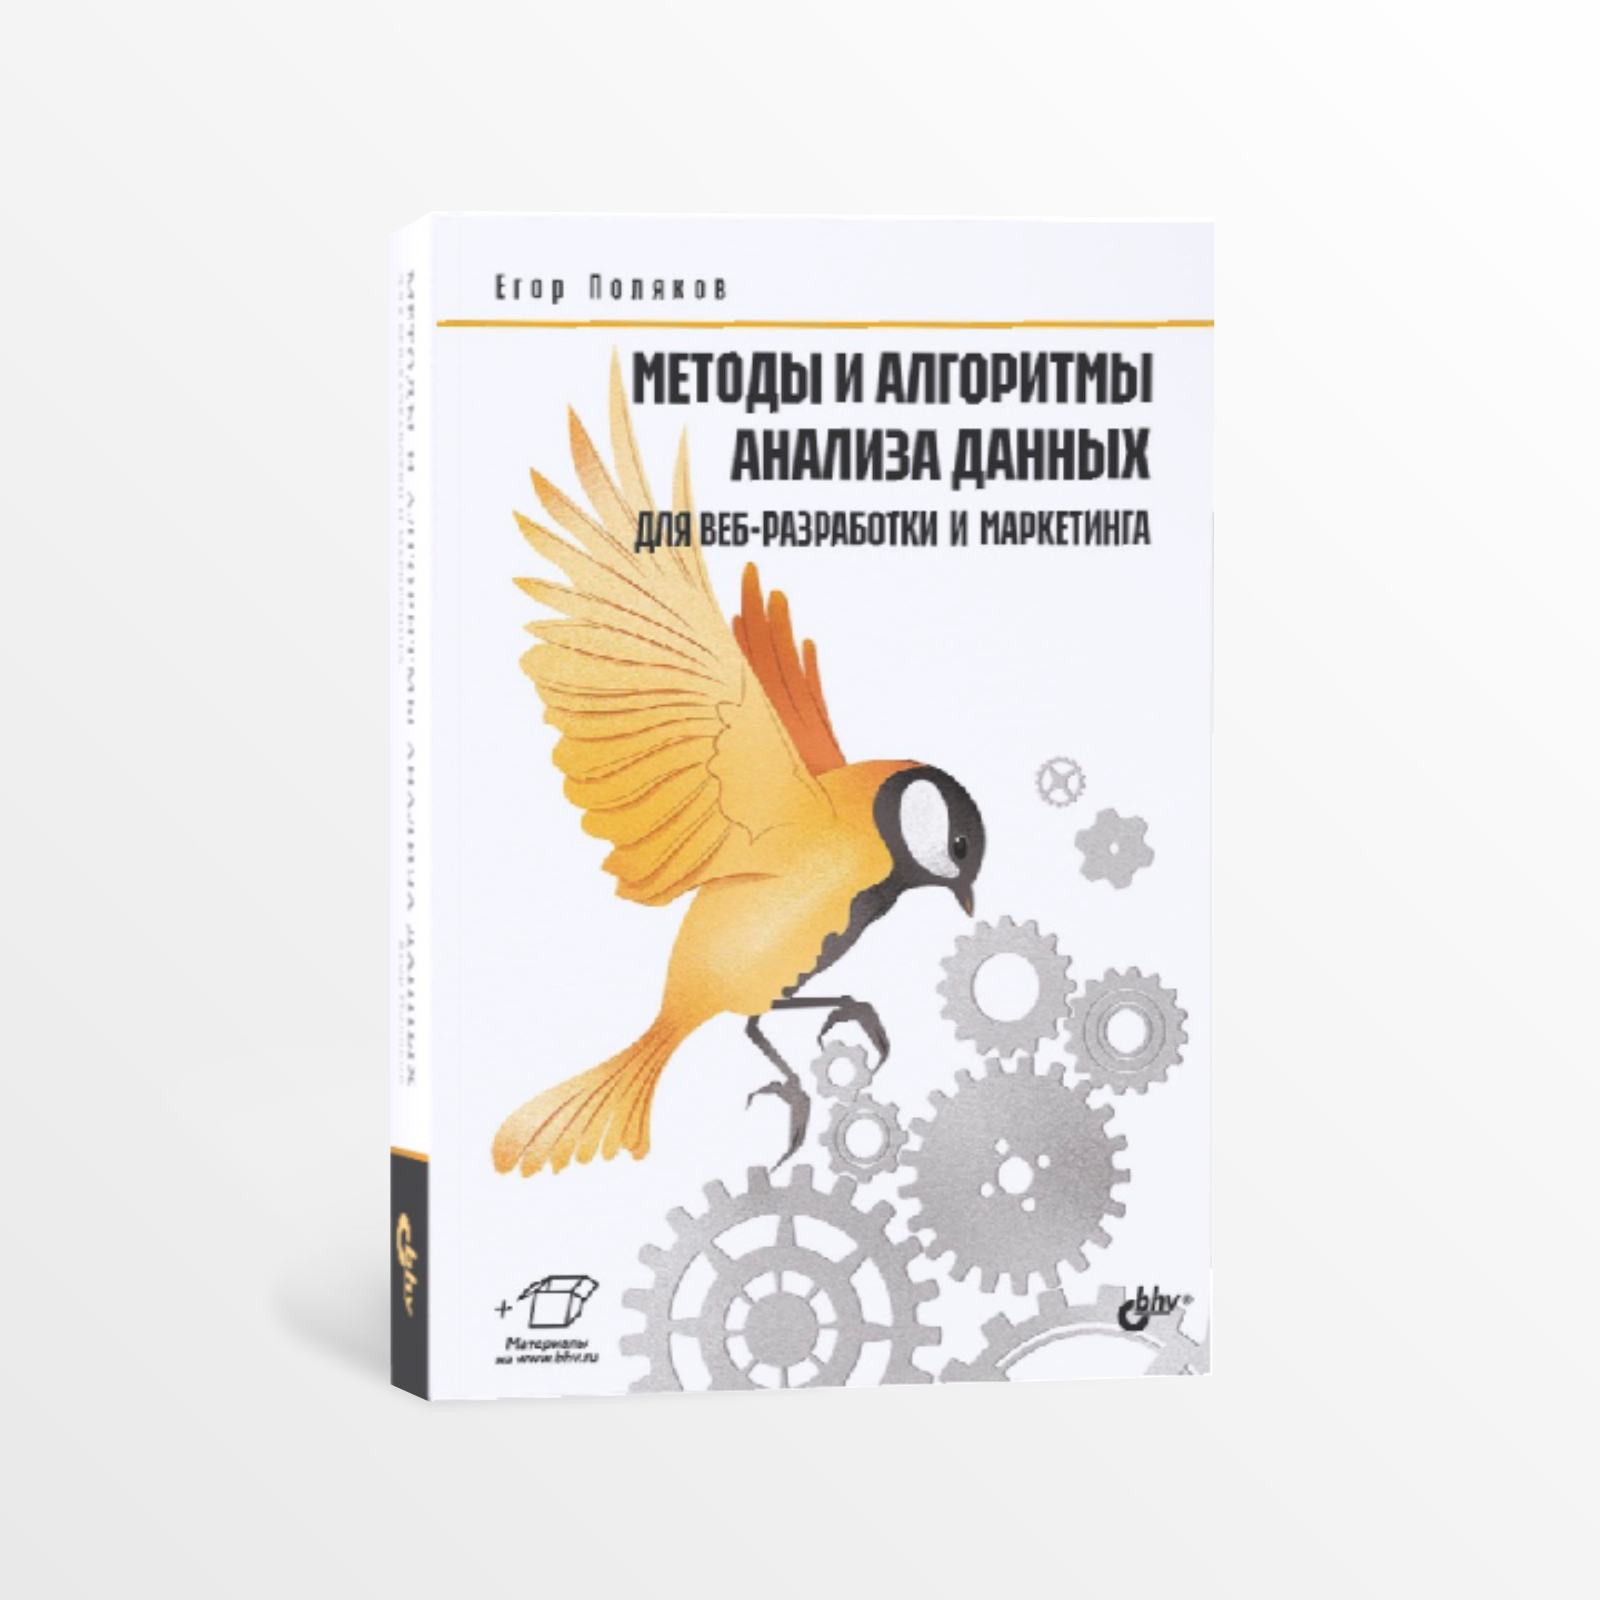 «Методы и алгоритмы анализа данных для веб-разработки и маркетинга» автора Е.Ю.Полякова